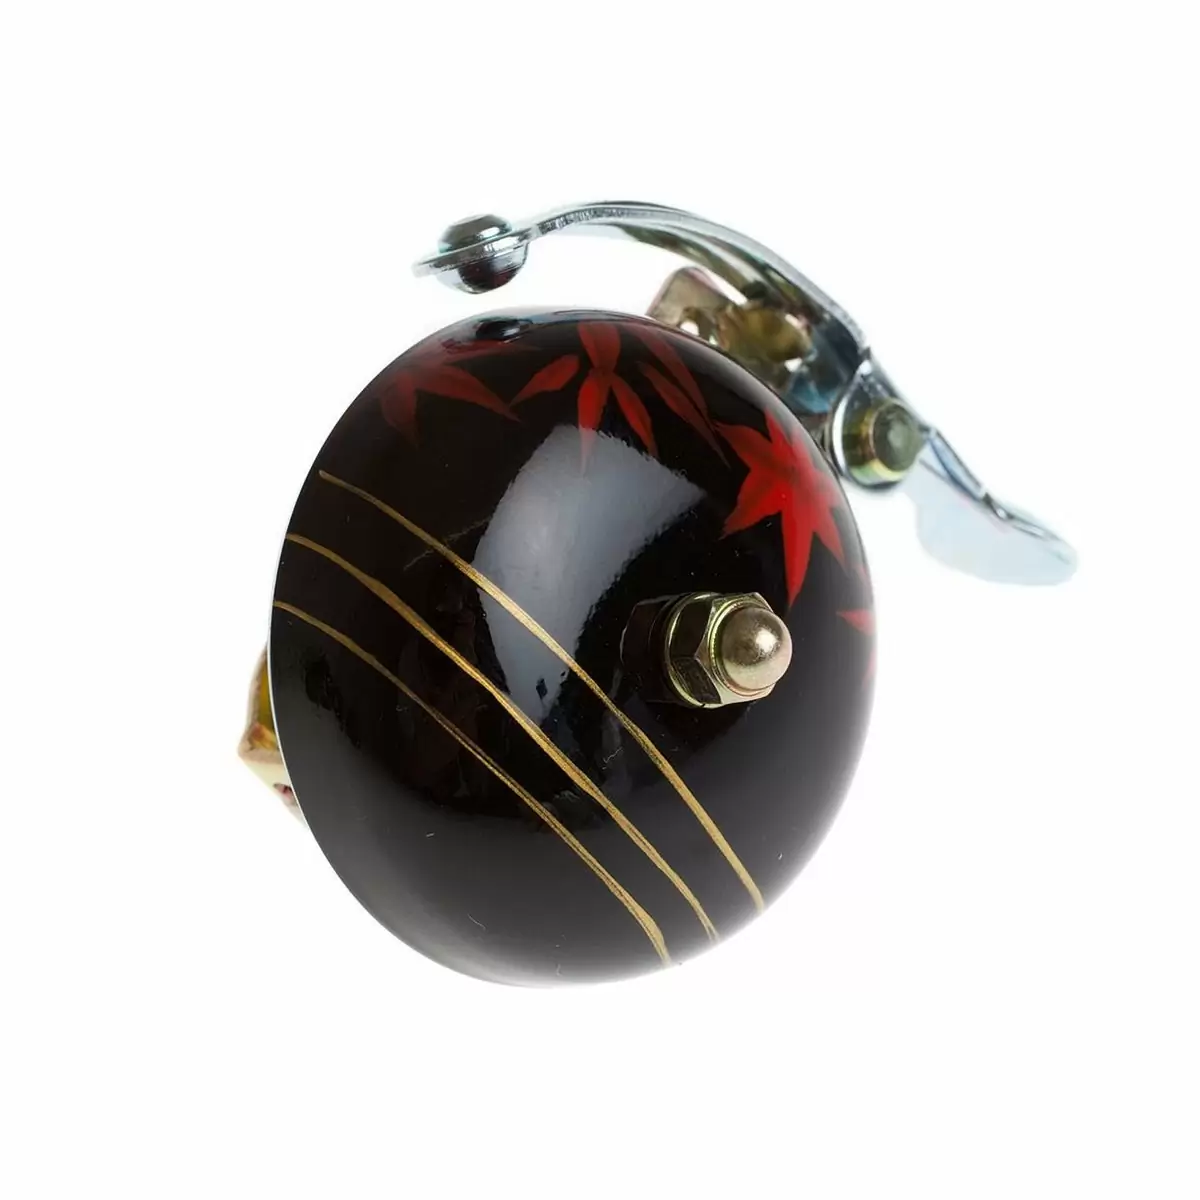 Kran handbemalte Glocke schwarzer Ahorn - image